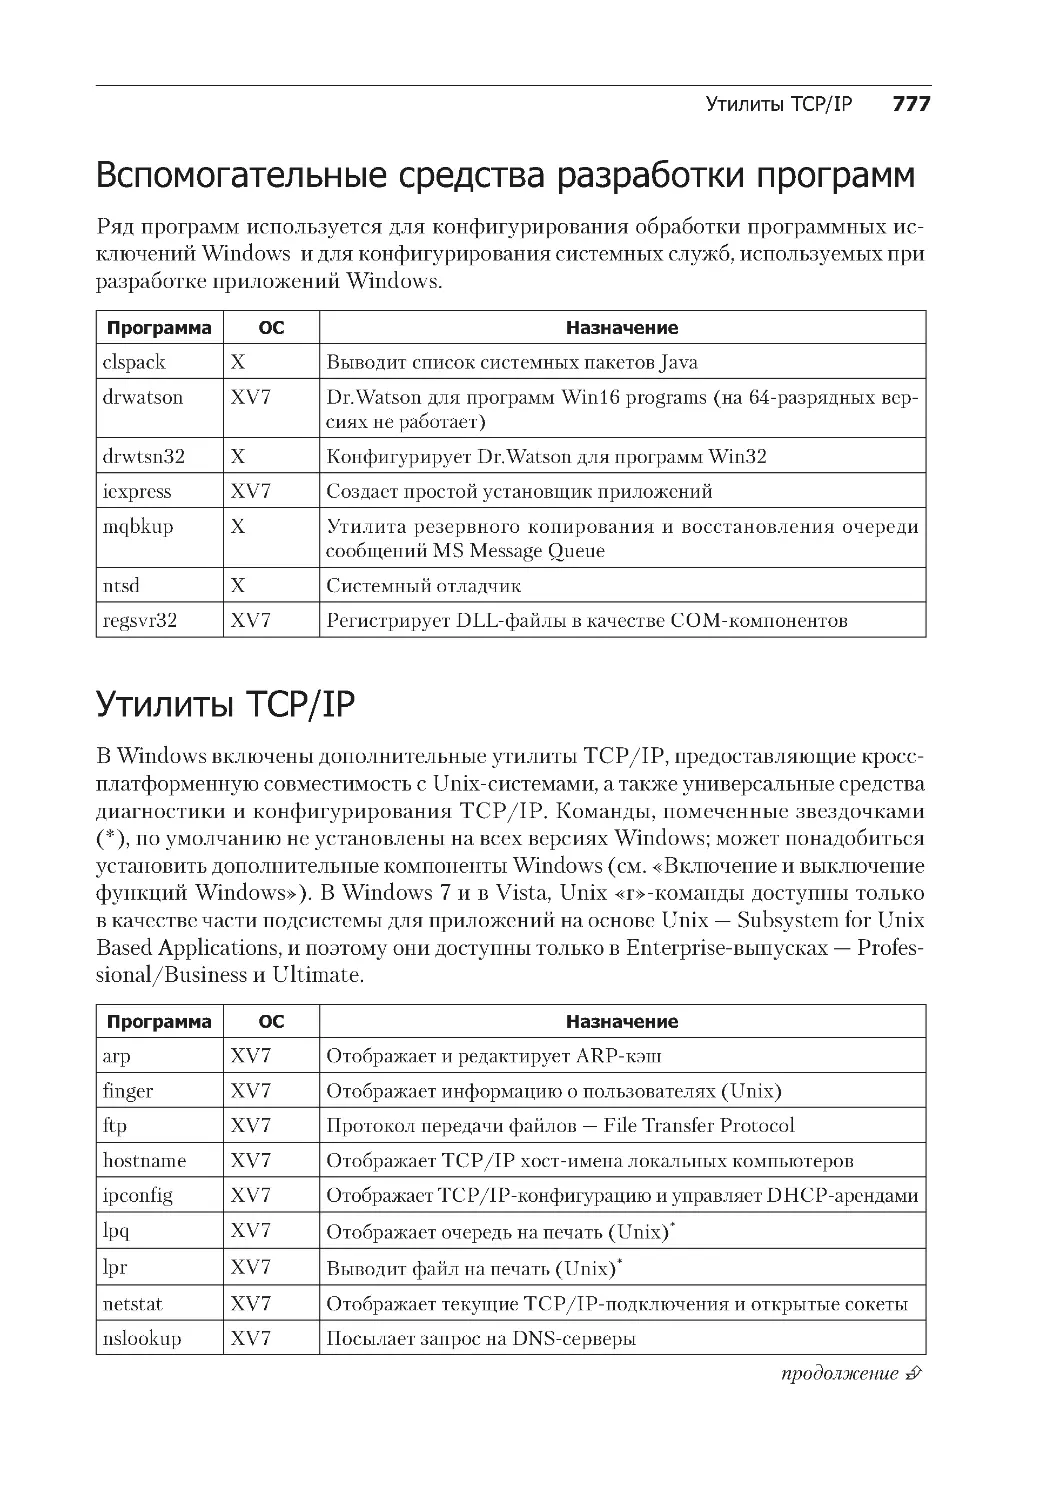 Вспомогательные средства разработки программ
Утилиты TCP/IP